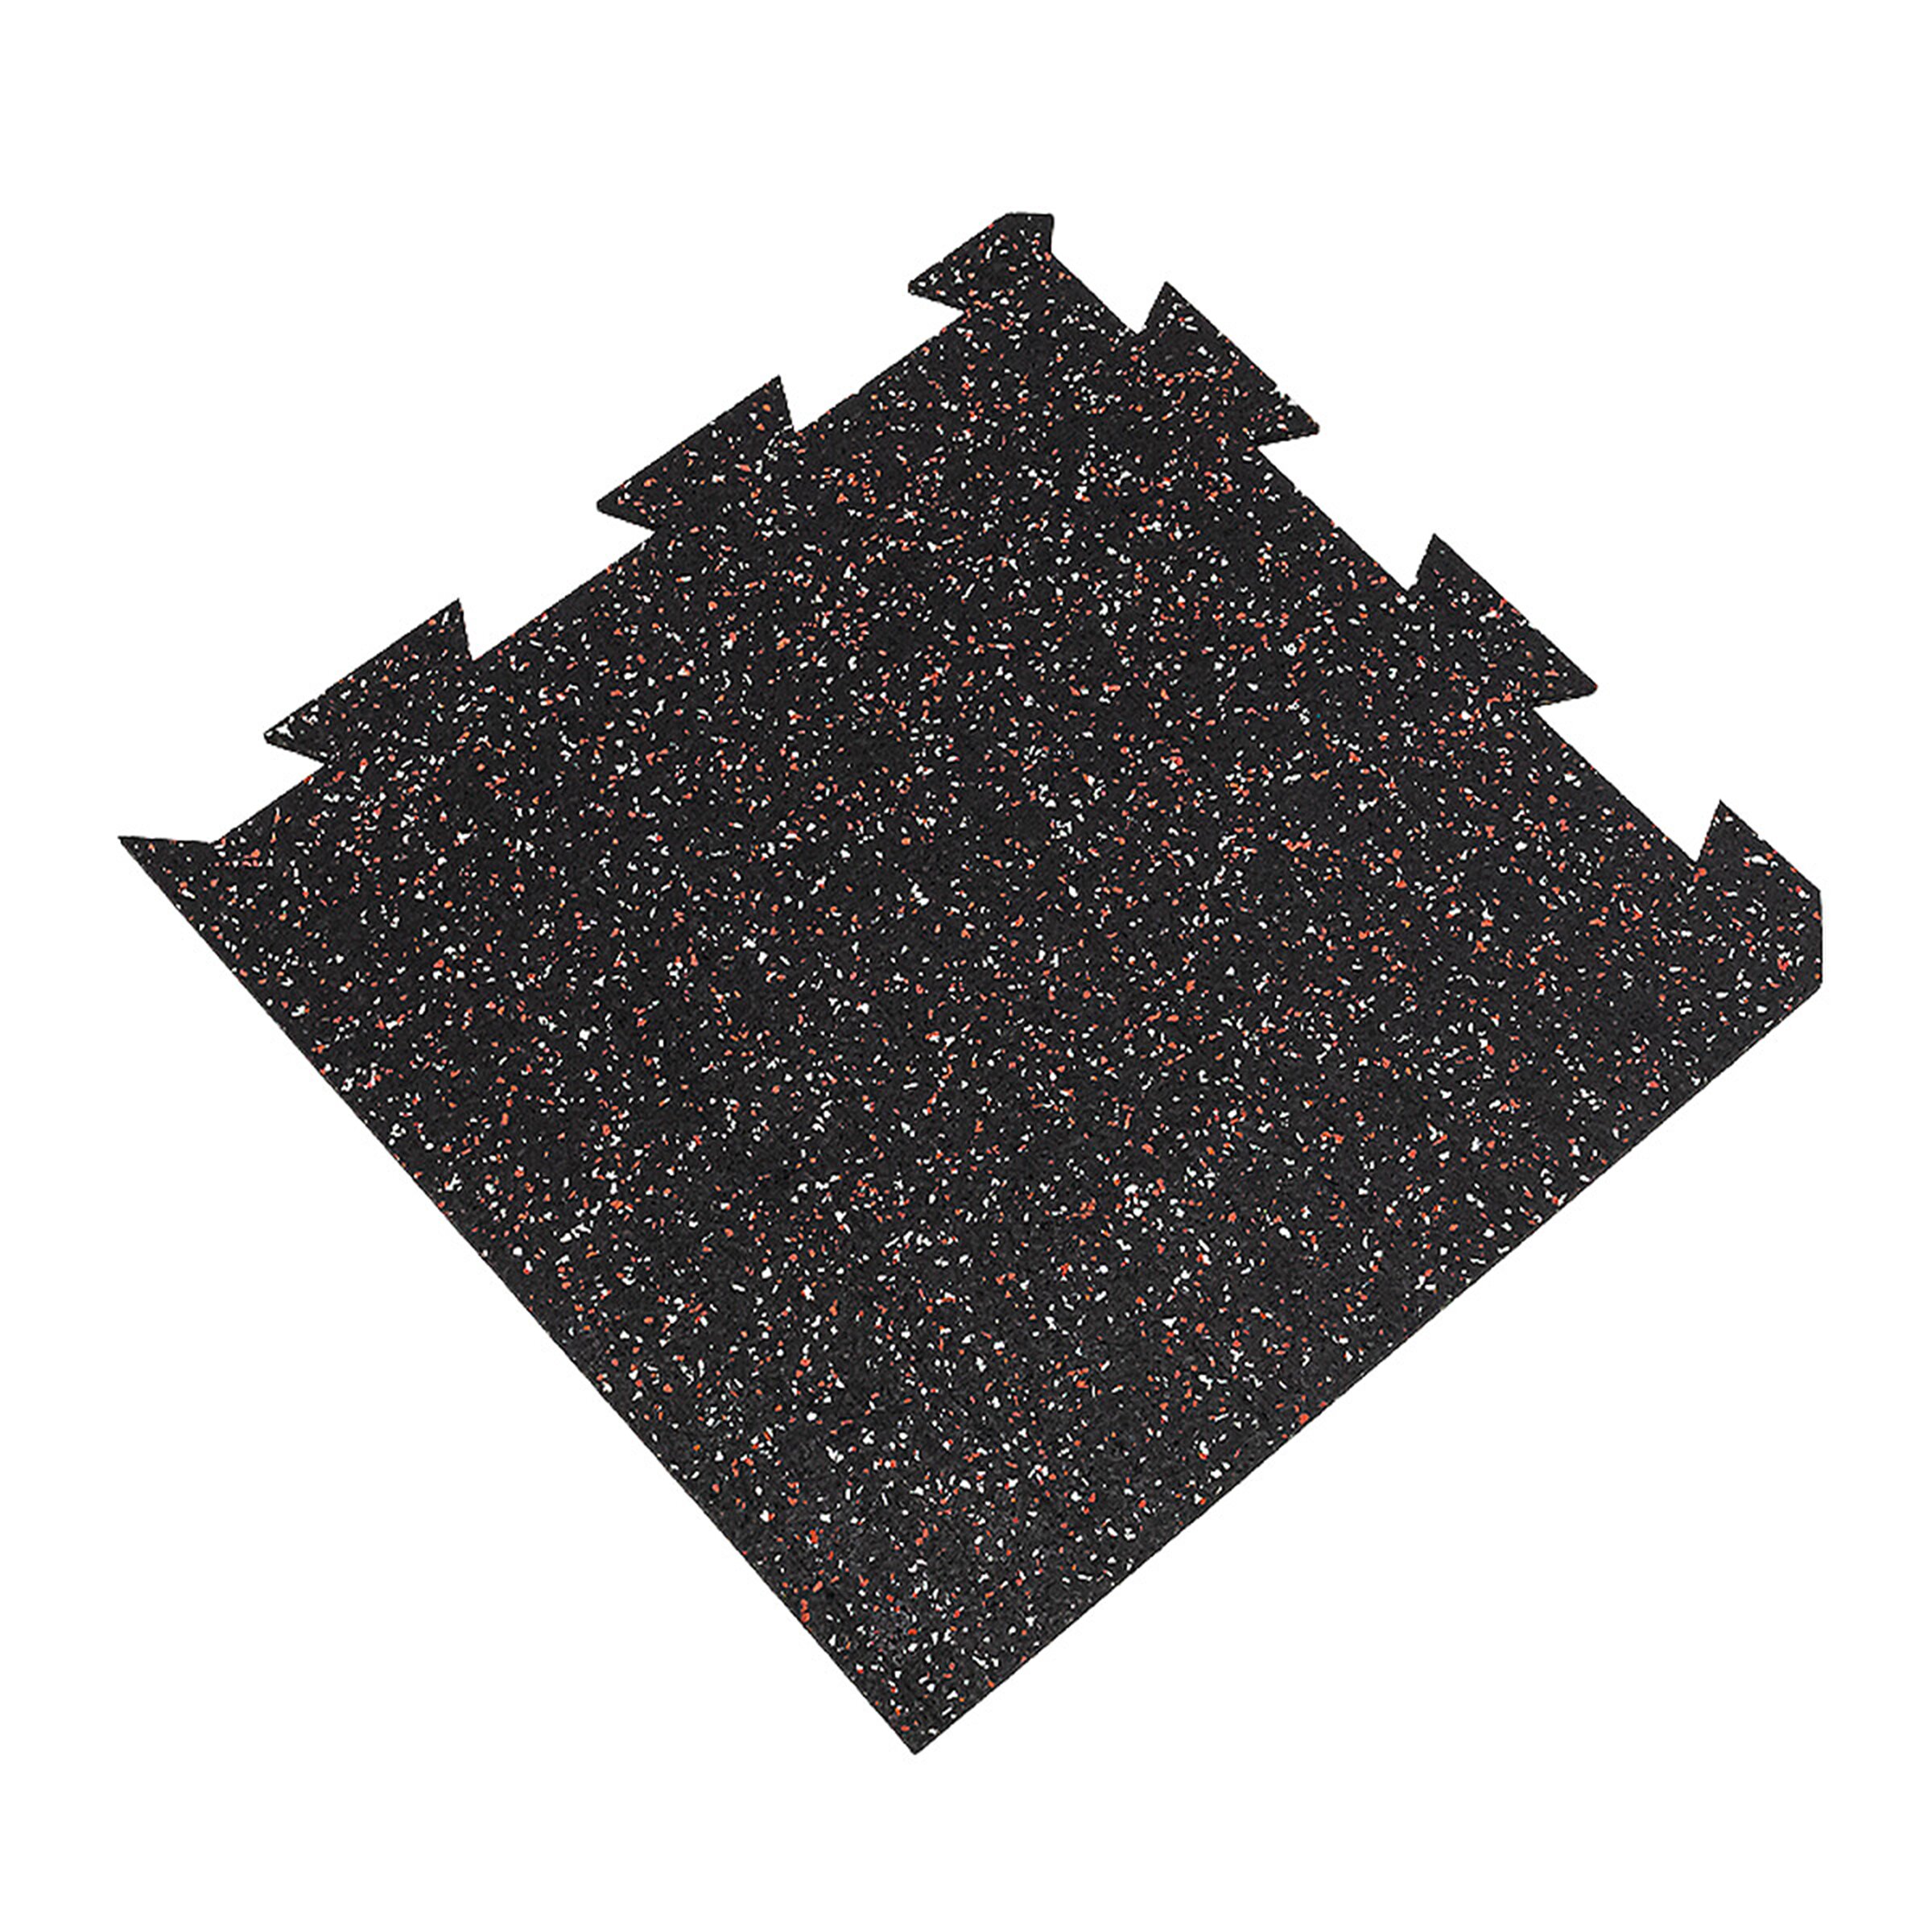 Čierno-bielo-červená podlahová guma (puzzle - roh) FLOMA FitFlo SF1050 - dĺžka 50 cm, šírka 50 cm, výška 1 cm